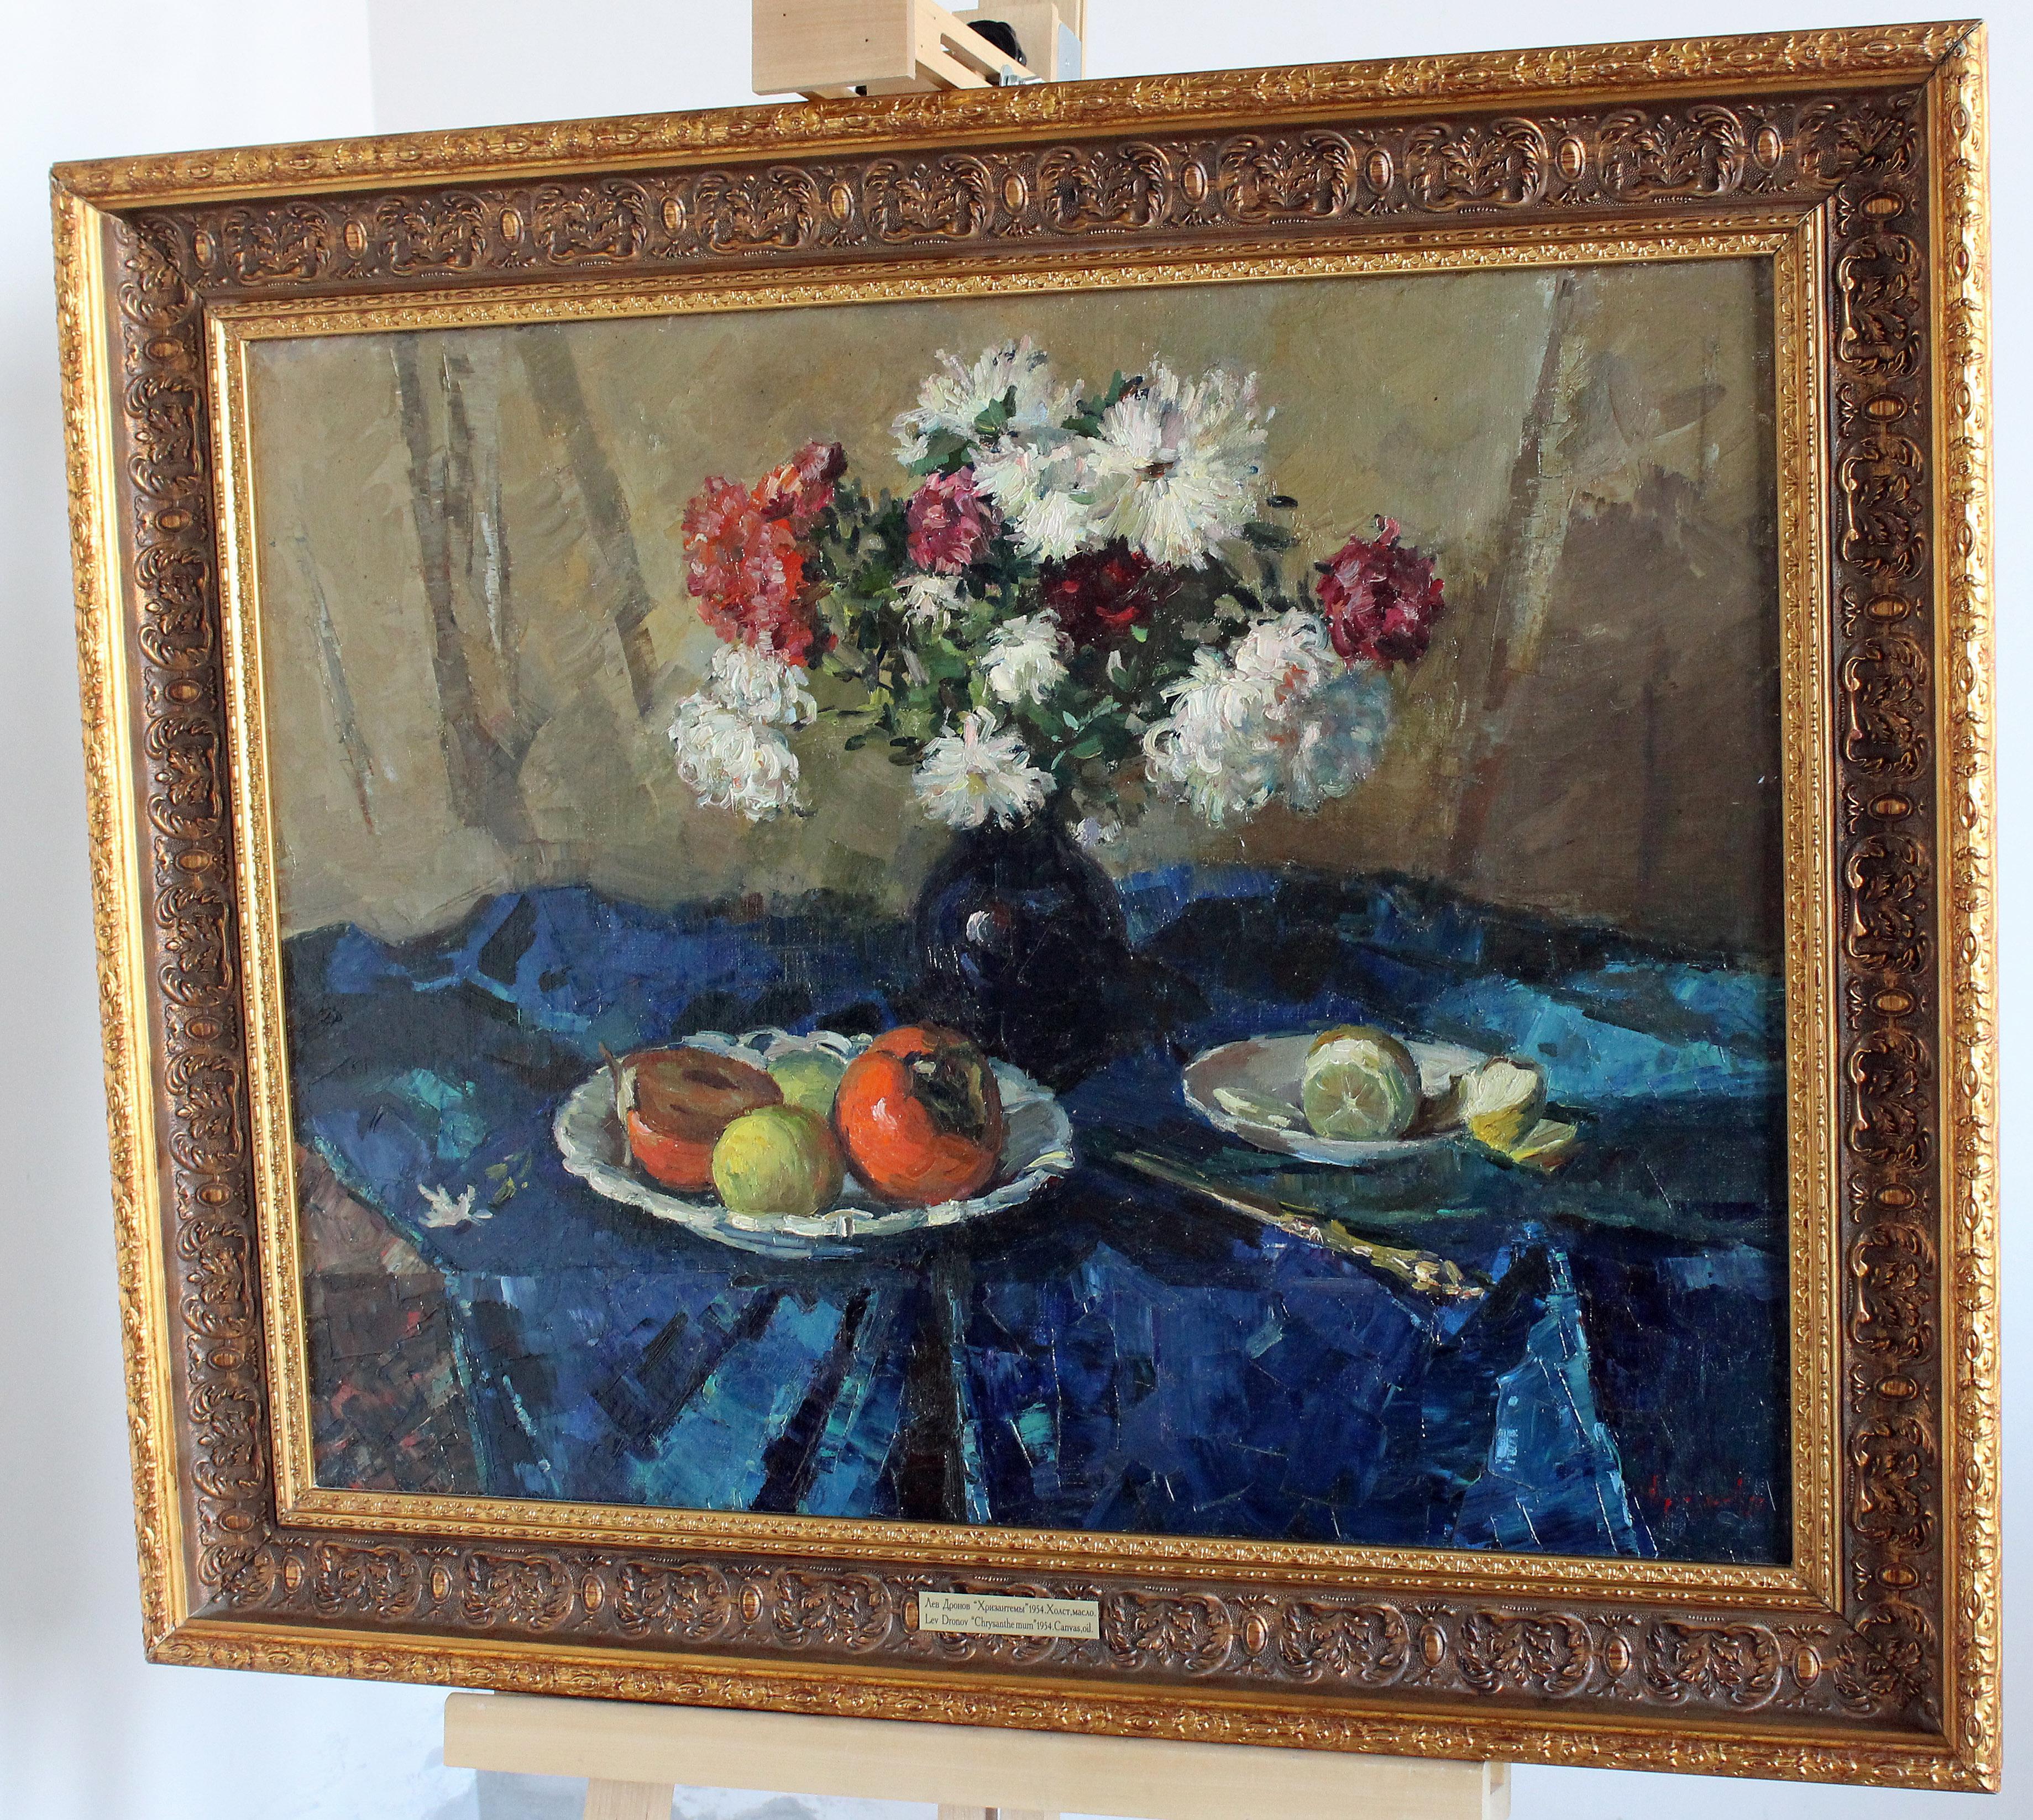 Sur le plan de la table, recouvert d'une draperie bleue, il y a un vase avec des chrysanthèmes de couleur blanche et violette, pratiquement au centre. Le fond est une toile de lin grisâtre neutre. Les coupes de fruits sont au premier plan.
Dans